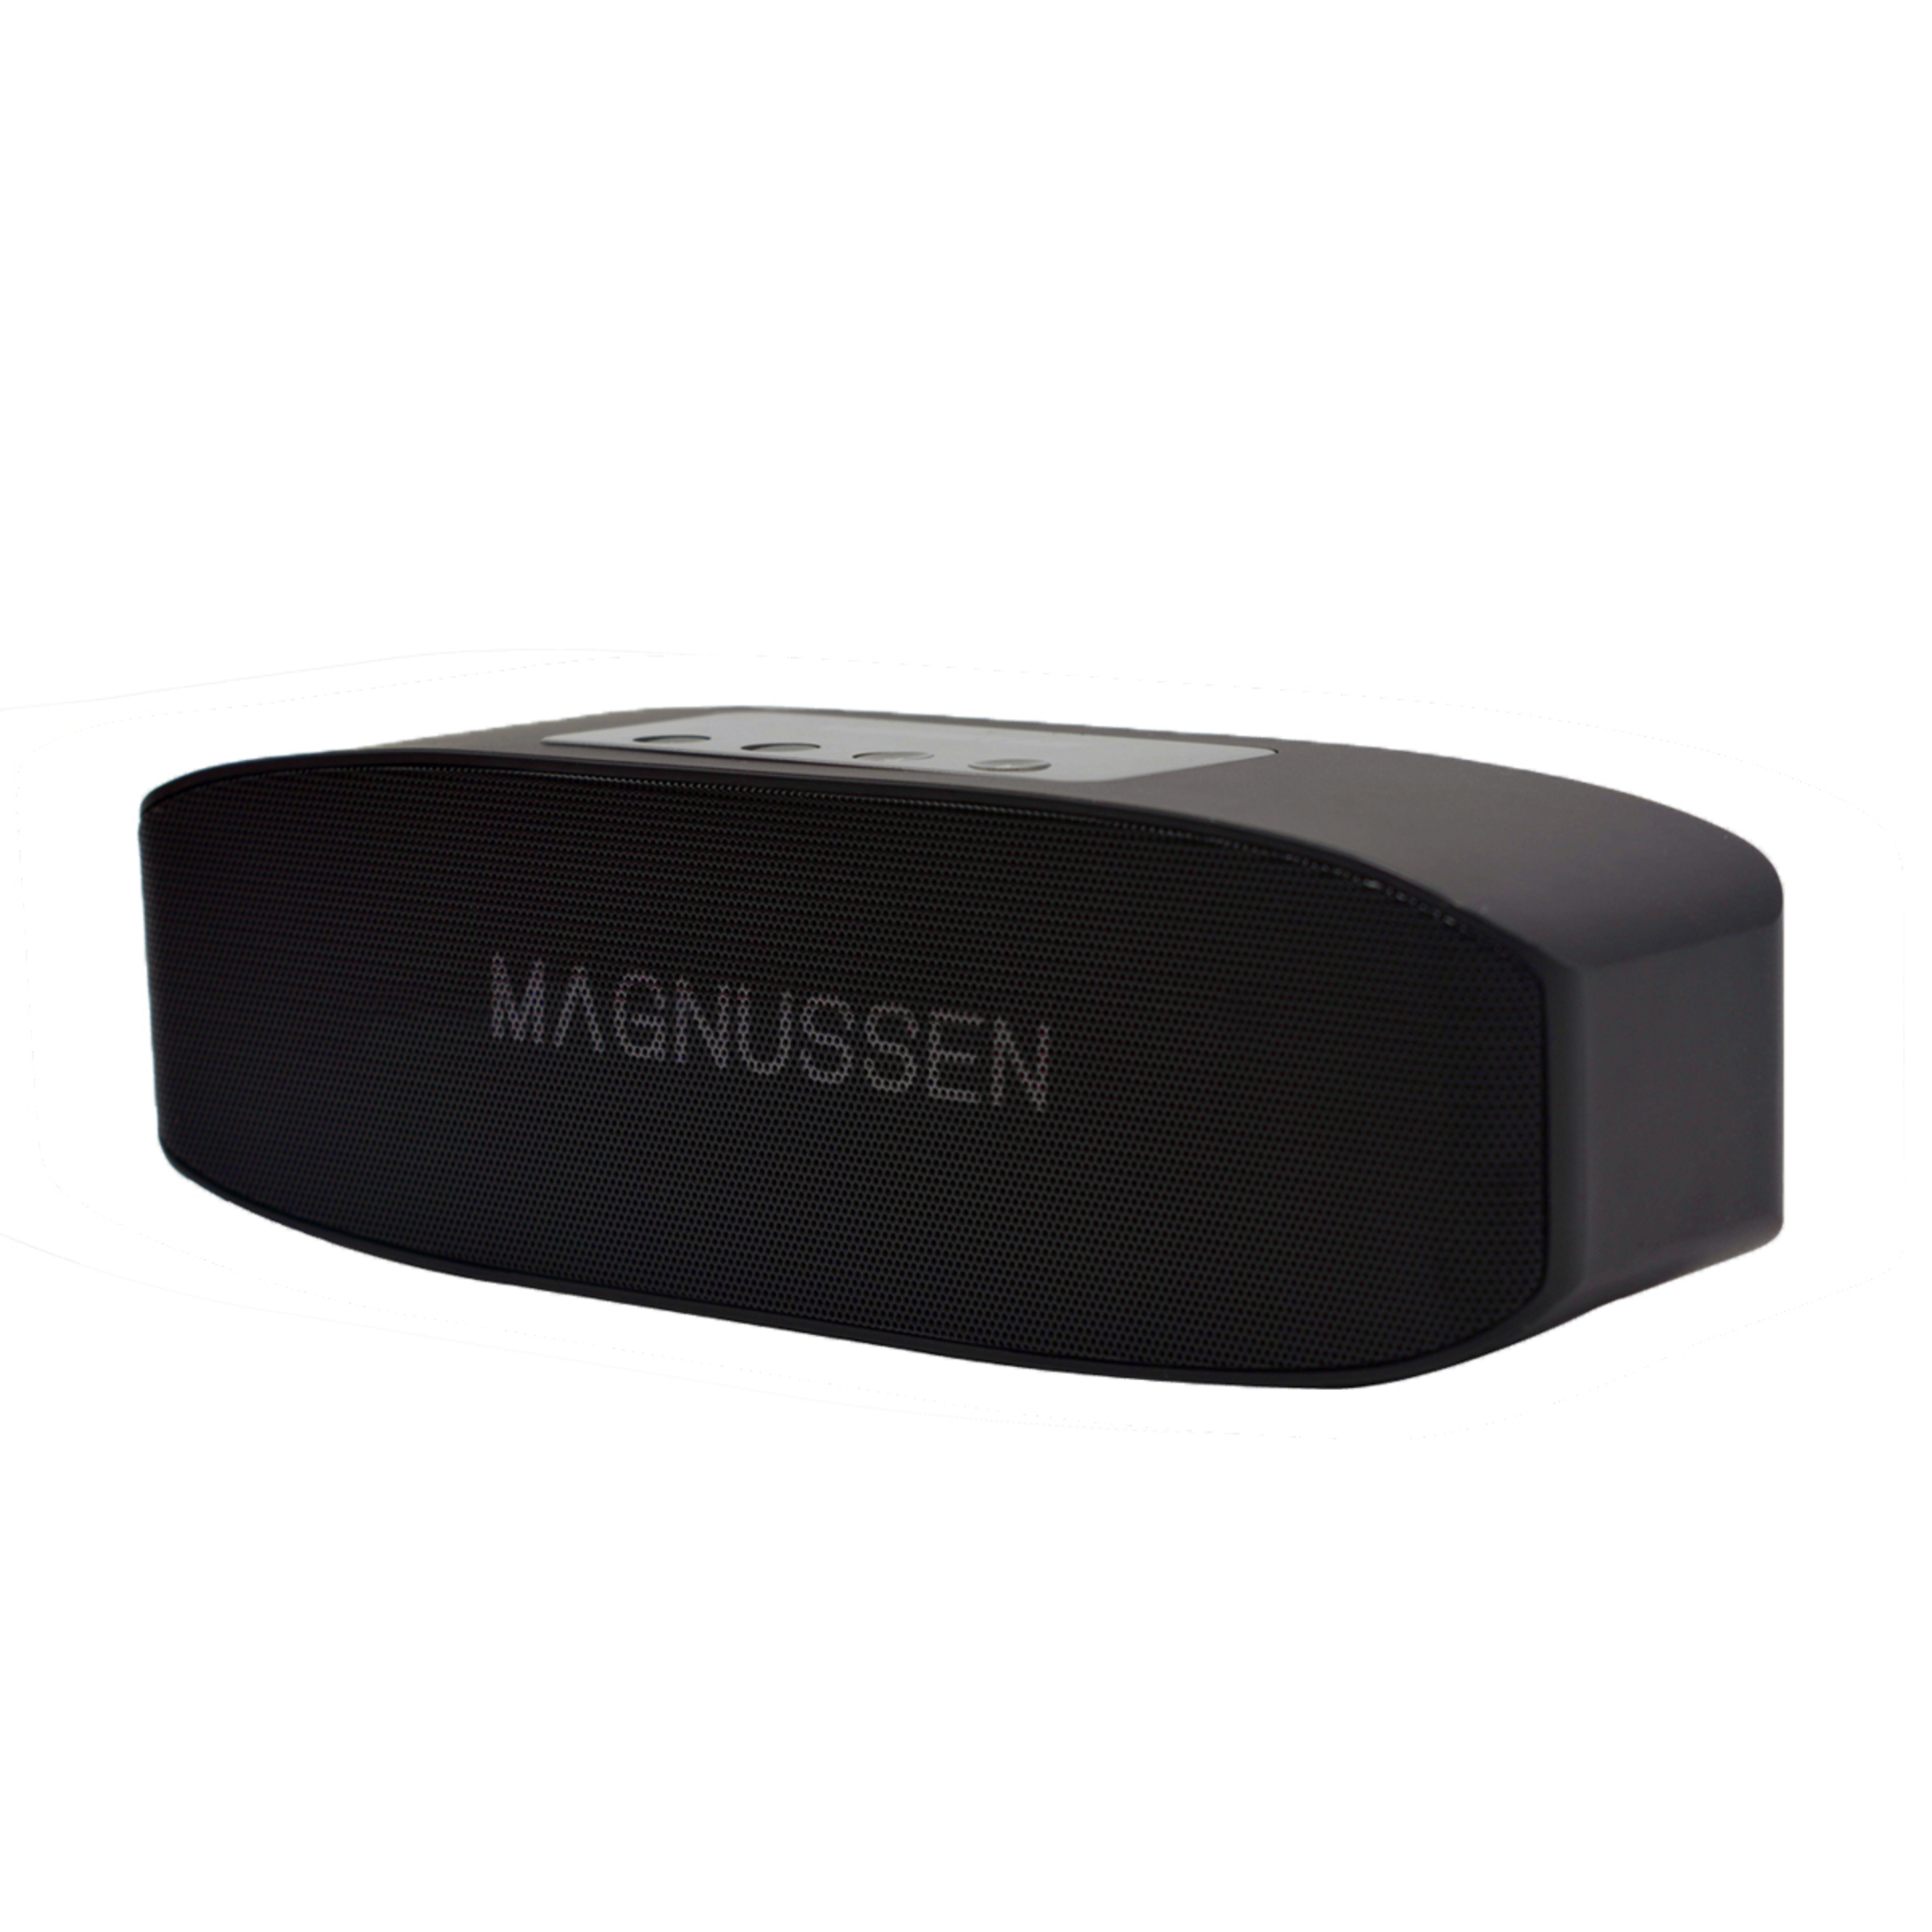 Altifalante Magnussen S3 Bluetooth - negro - 